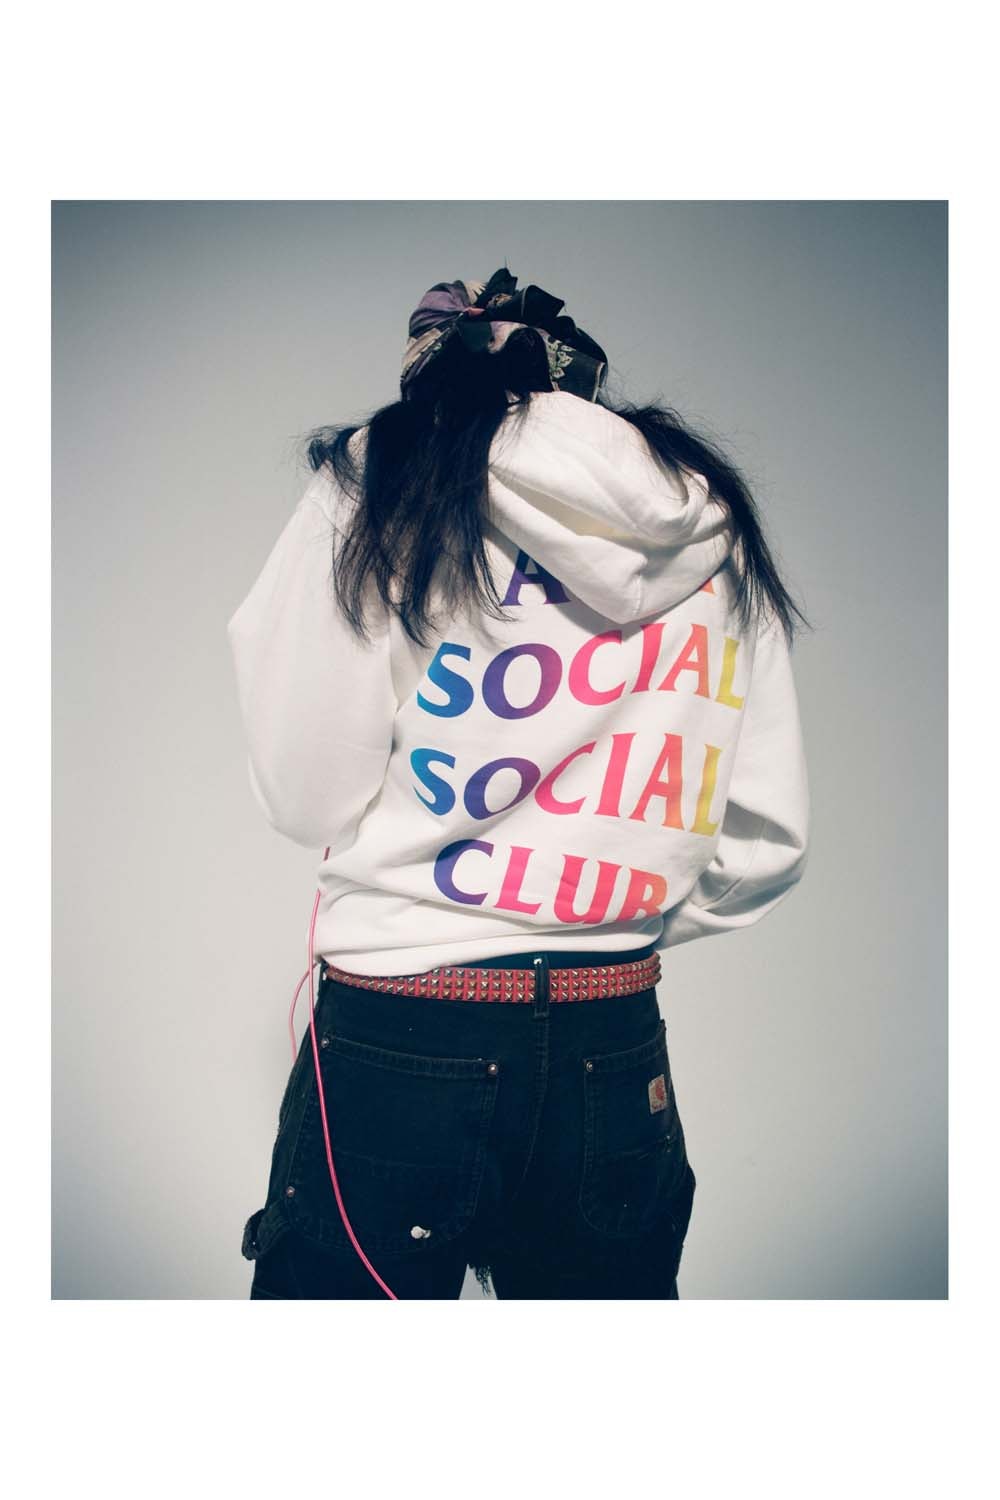 안티 소셜 소셜 클럽 2019 가을, 겨울 'Still Stressed' 컬렉션 룩북